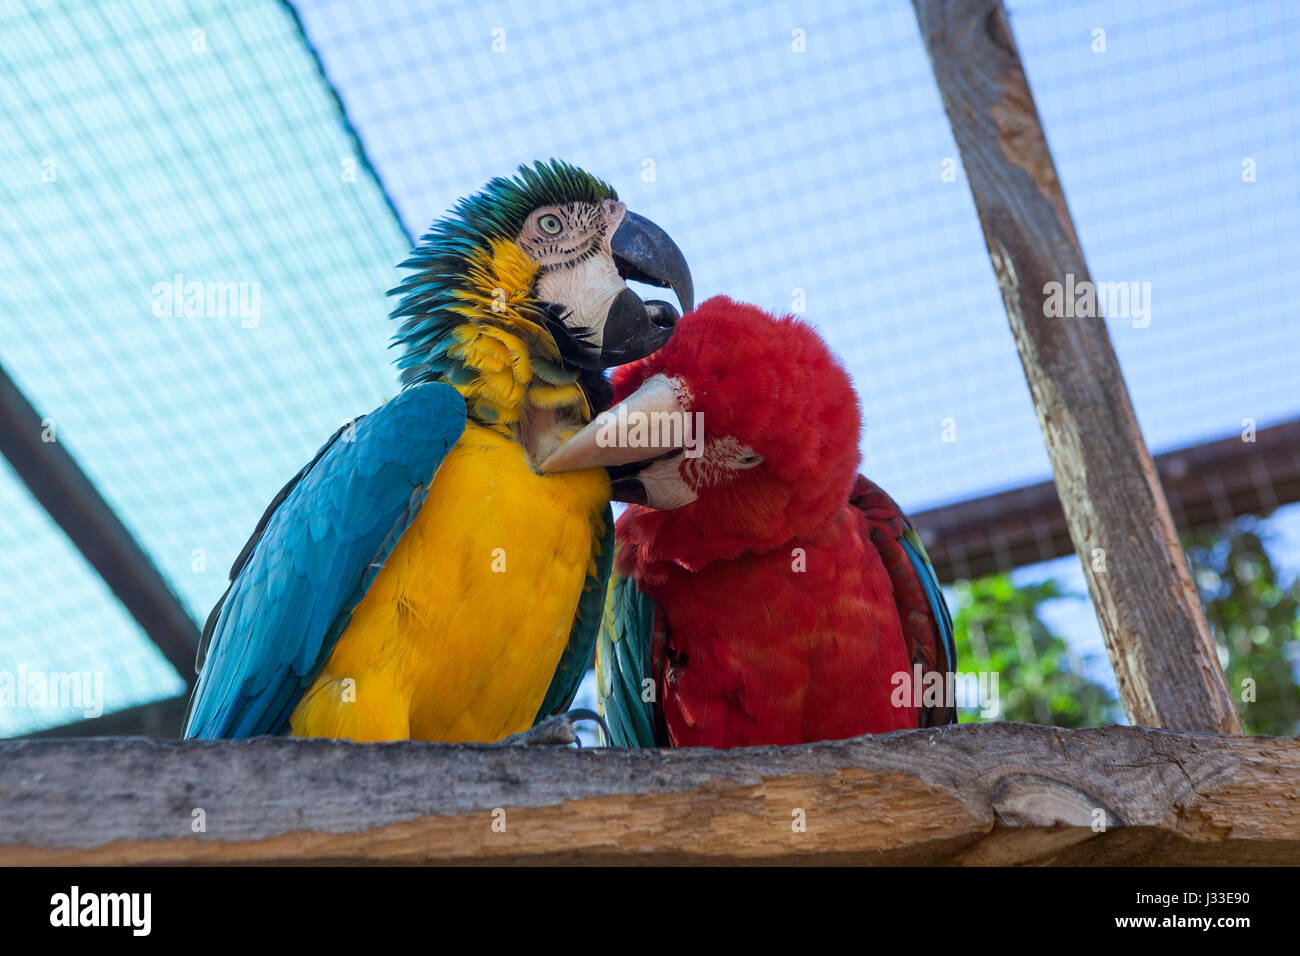 Zwei Ara Papageien sitzen auf dem Hochsitz. Bunte stromlinienförmigen Körper und große Köpfe mit einem Haken Unterkiefer oder Schnabel Stockfoto